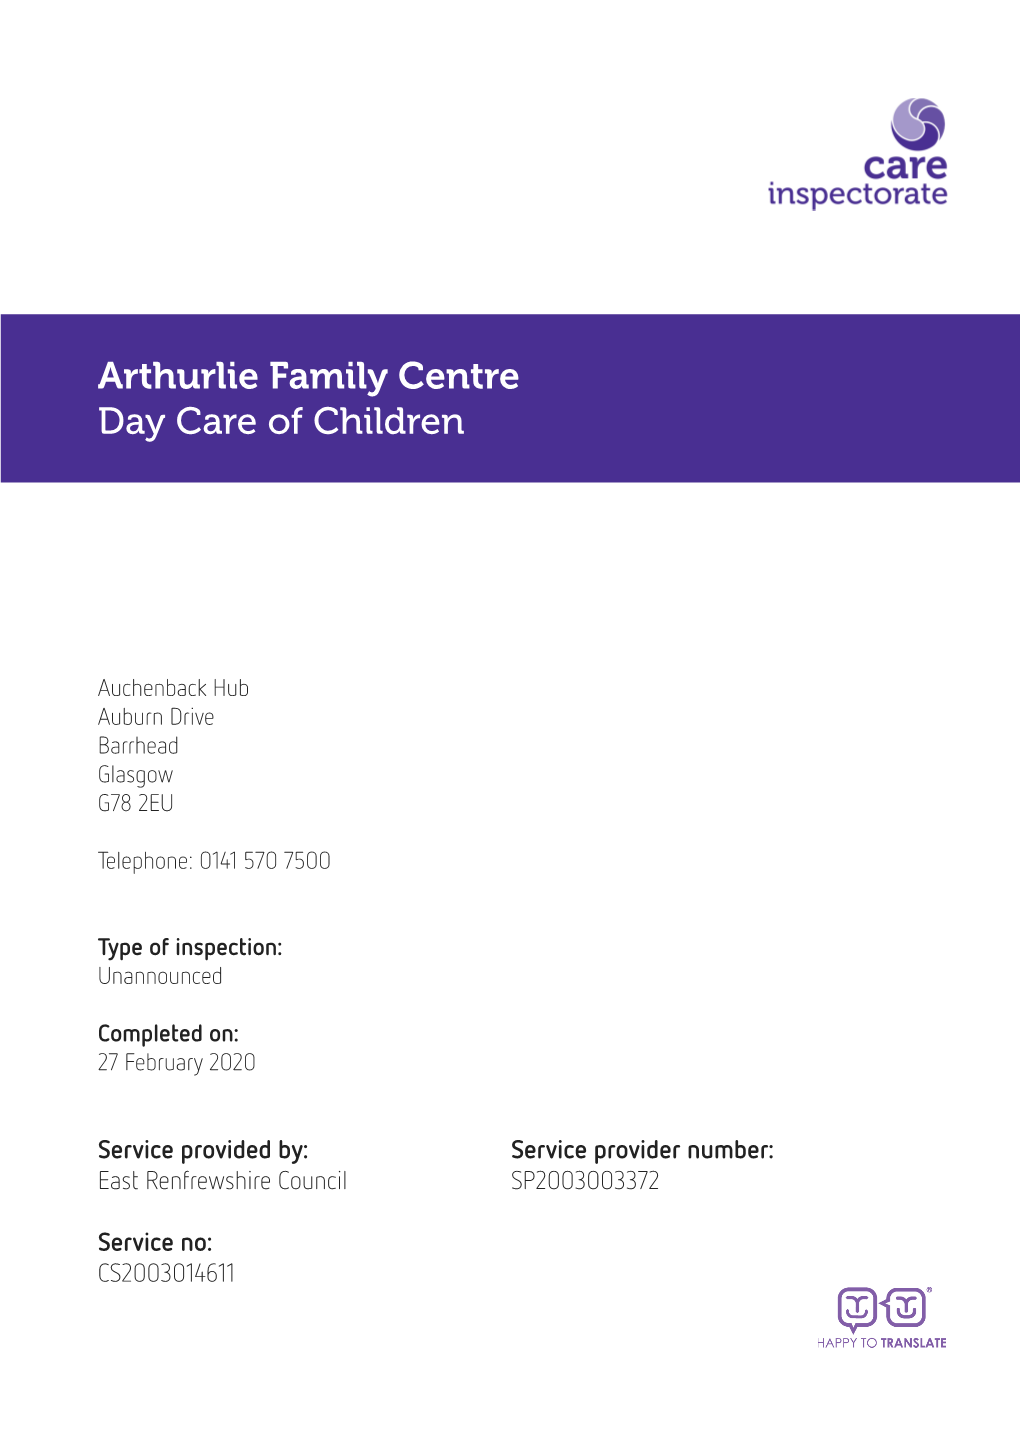 Arthurlie Family Centre Day Care of Children